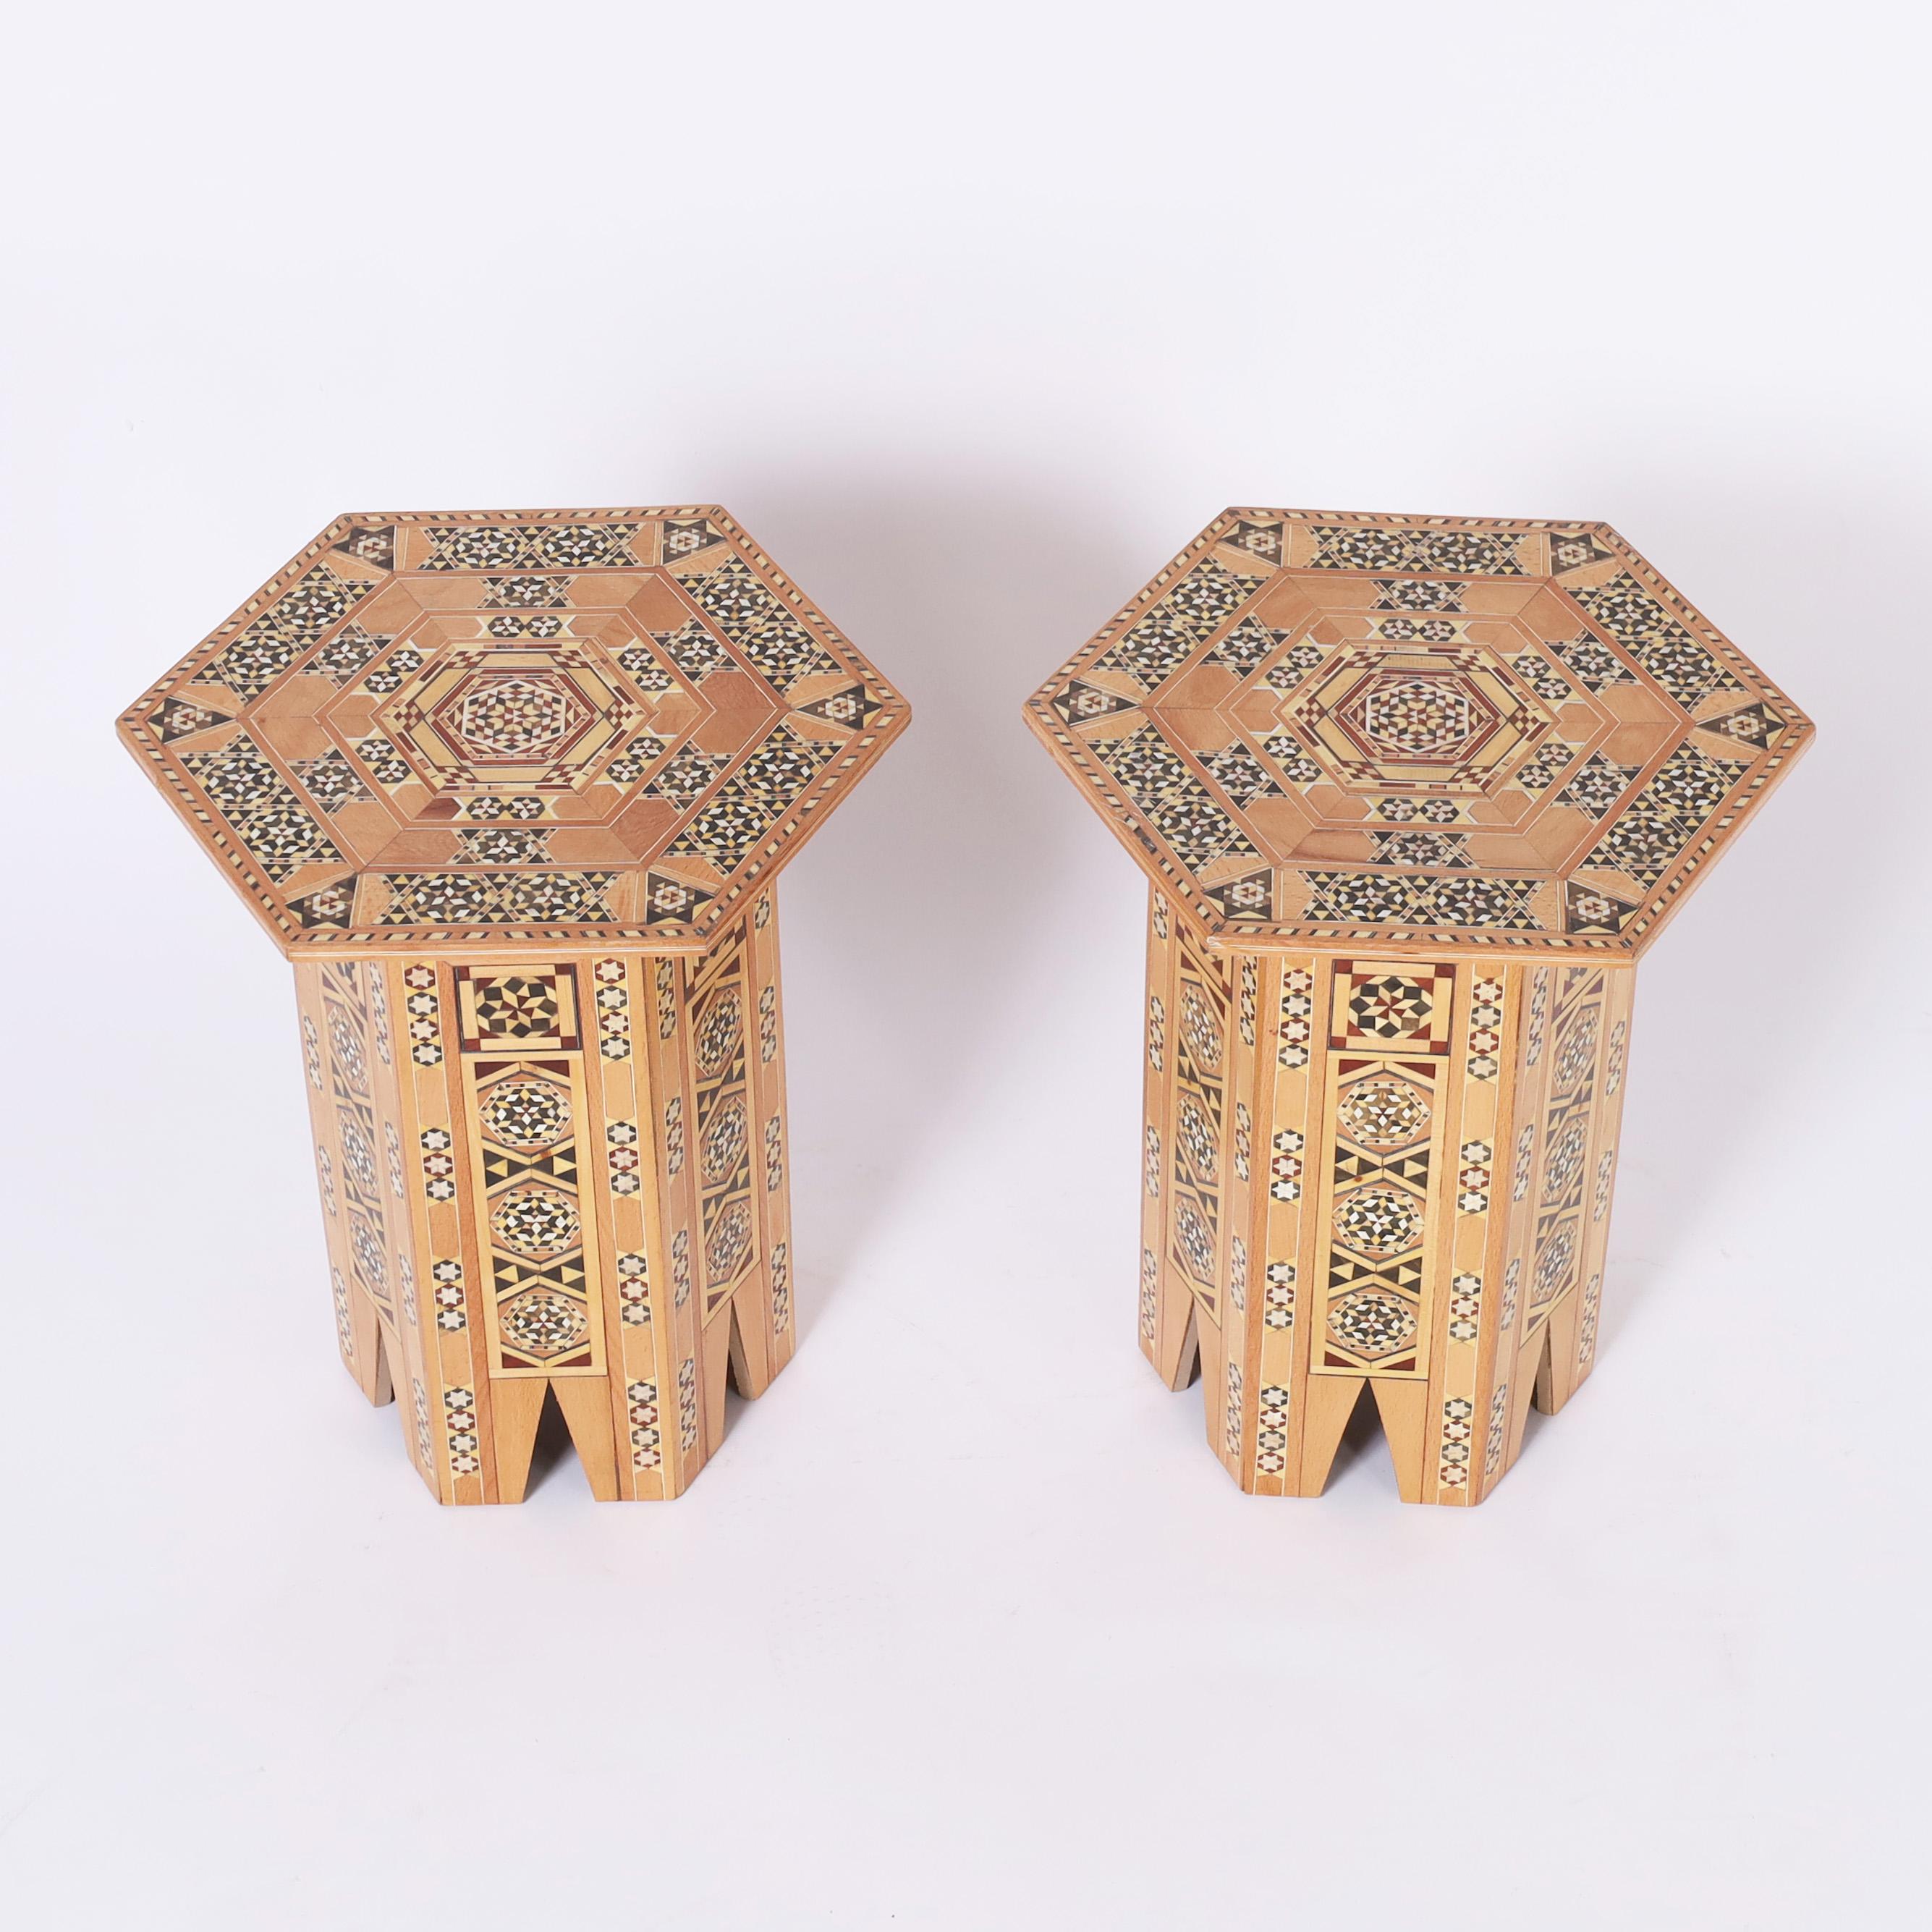 Beeindruckendes Paar marokkanischer Ständer mit aufwendigen geometrischen Intarsien aus exotischen Hölzern wie Mahagoni, Ebenholz, Nussbaum, Weißholz und Gelbpappel über einer sechseckigen Form mit stilisierten Bögen. 